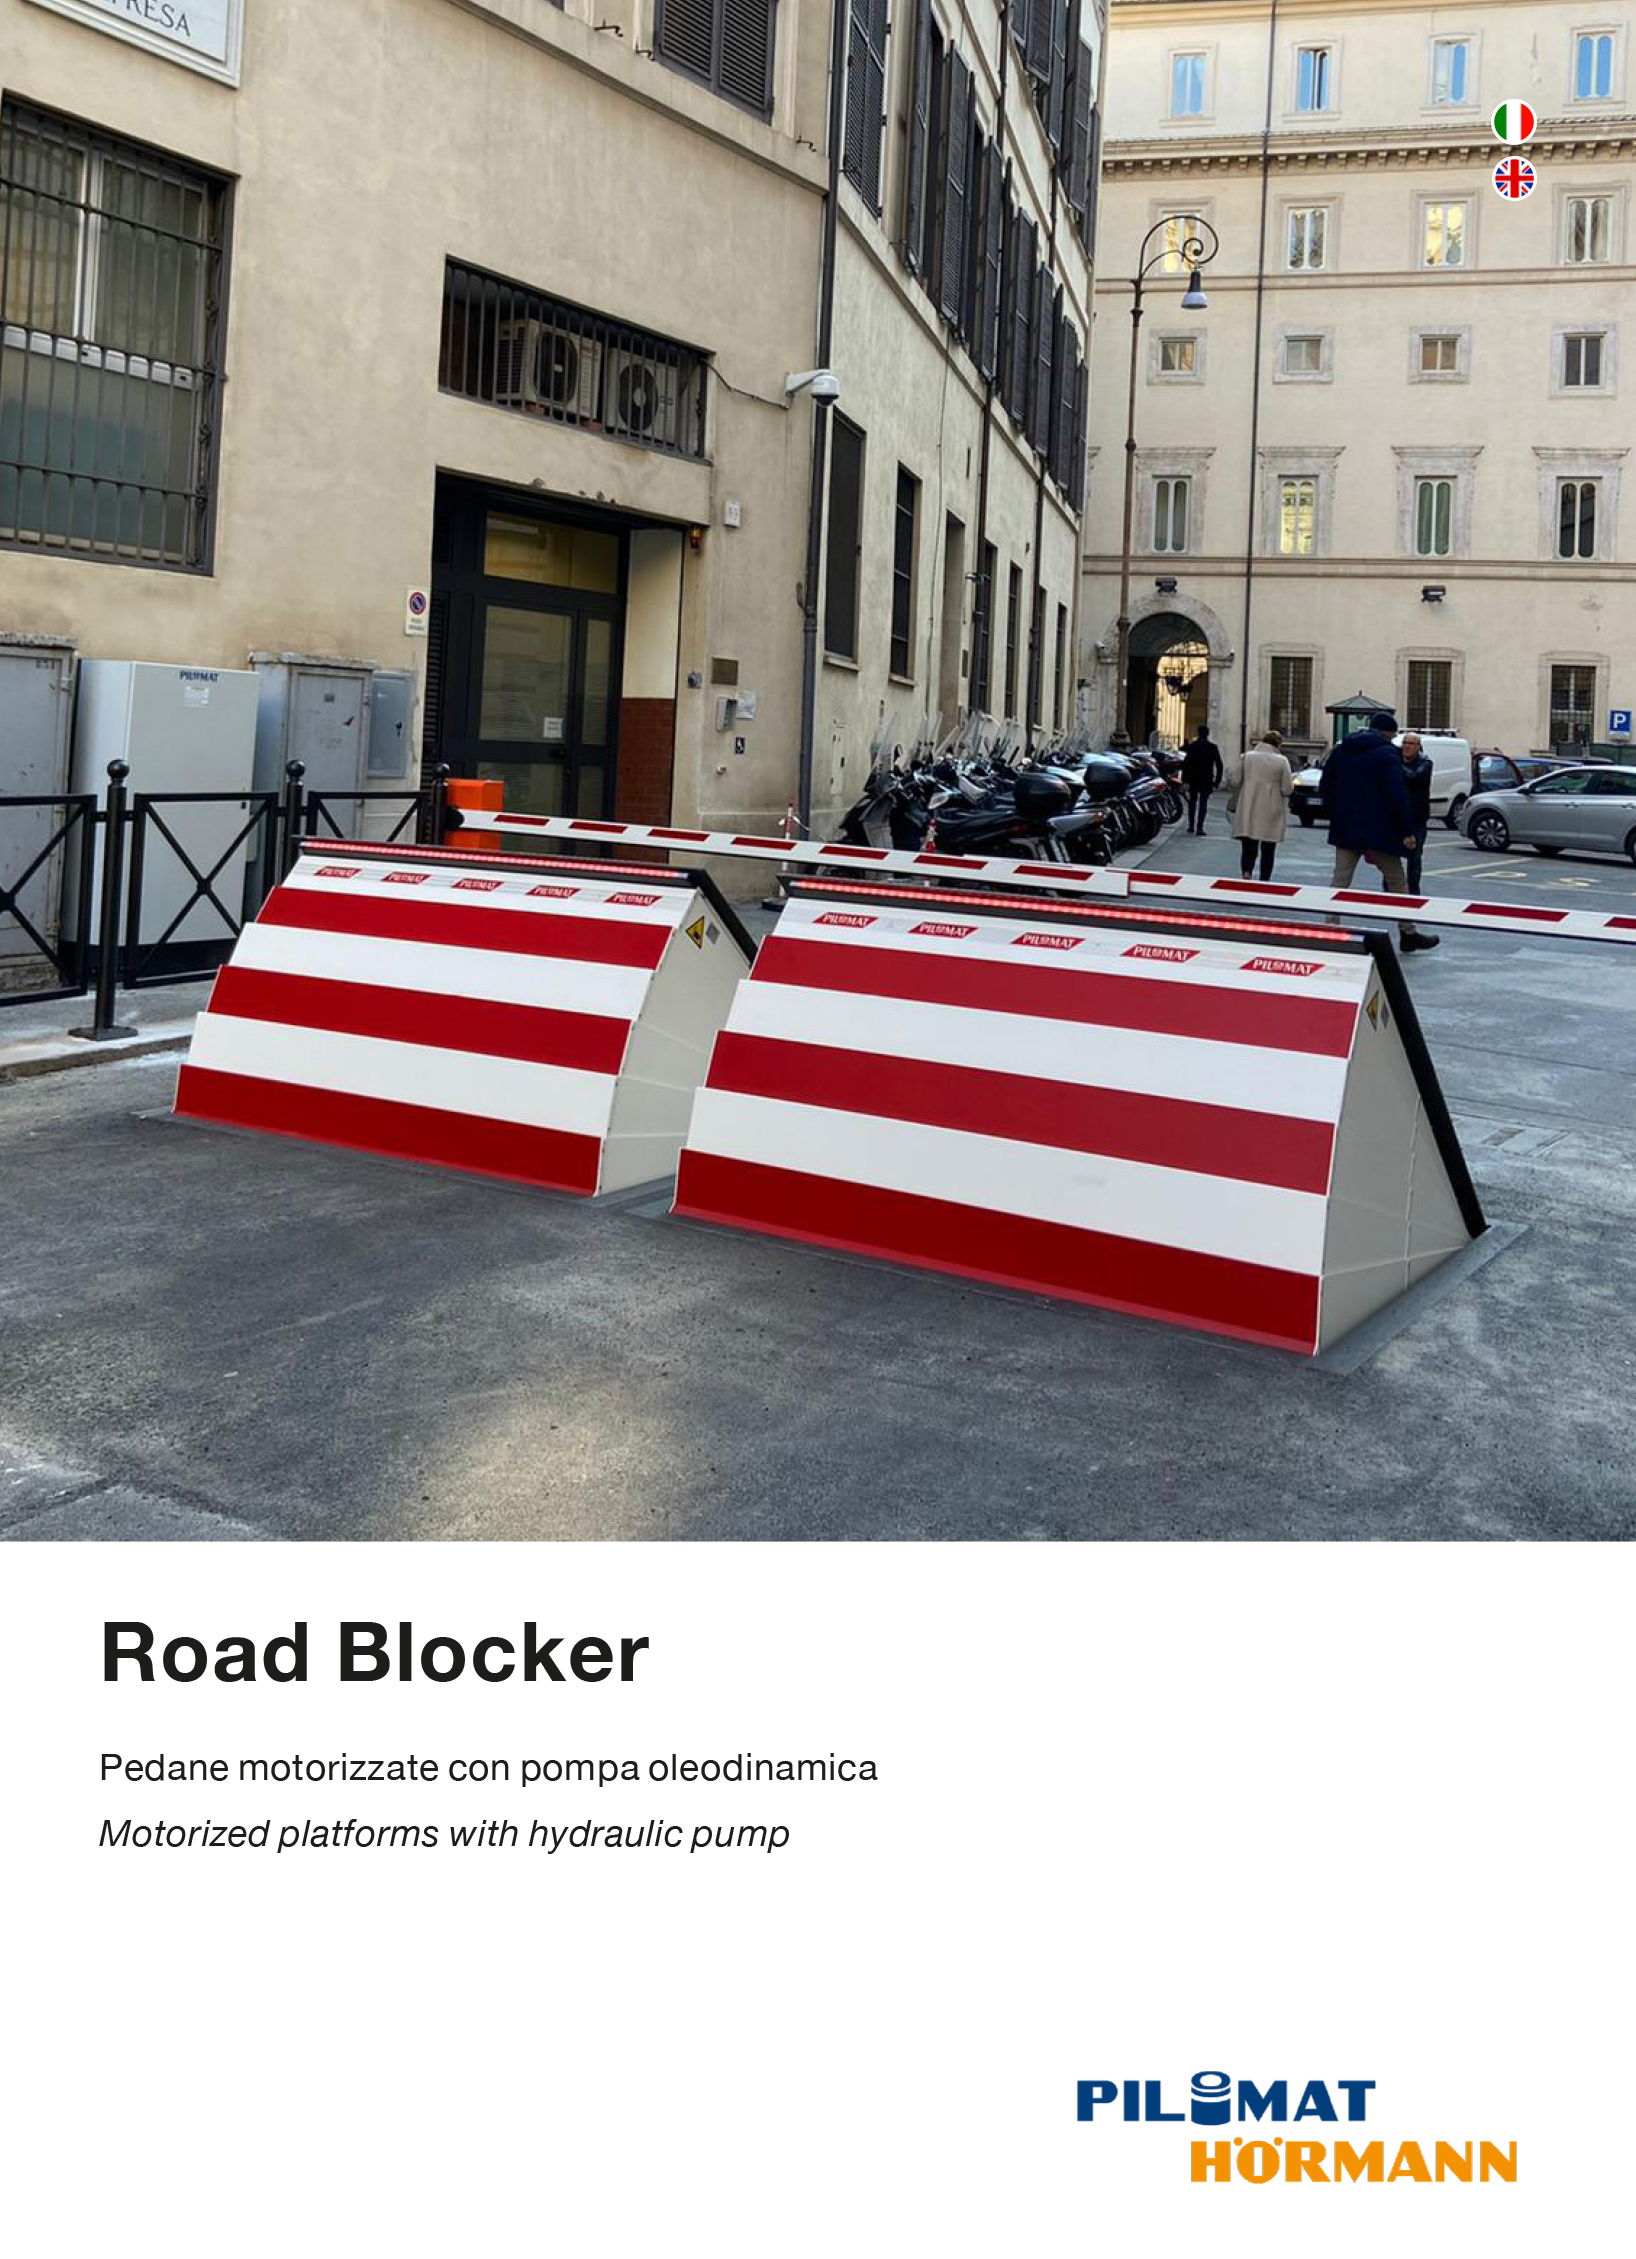 Copertina della brochure dei road blocker Pilomat, che mostra due pedane motorizzate che impediscono il transito ai veicoli non autorizzati